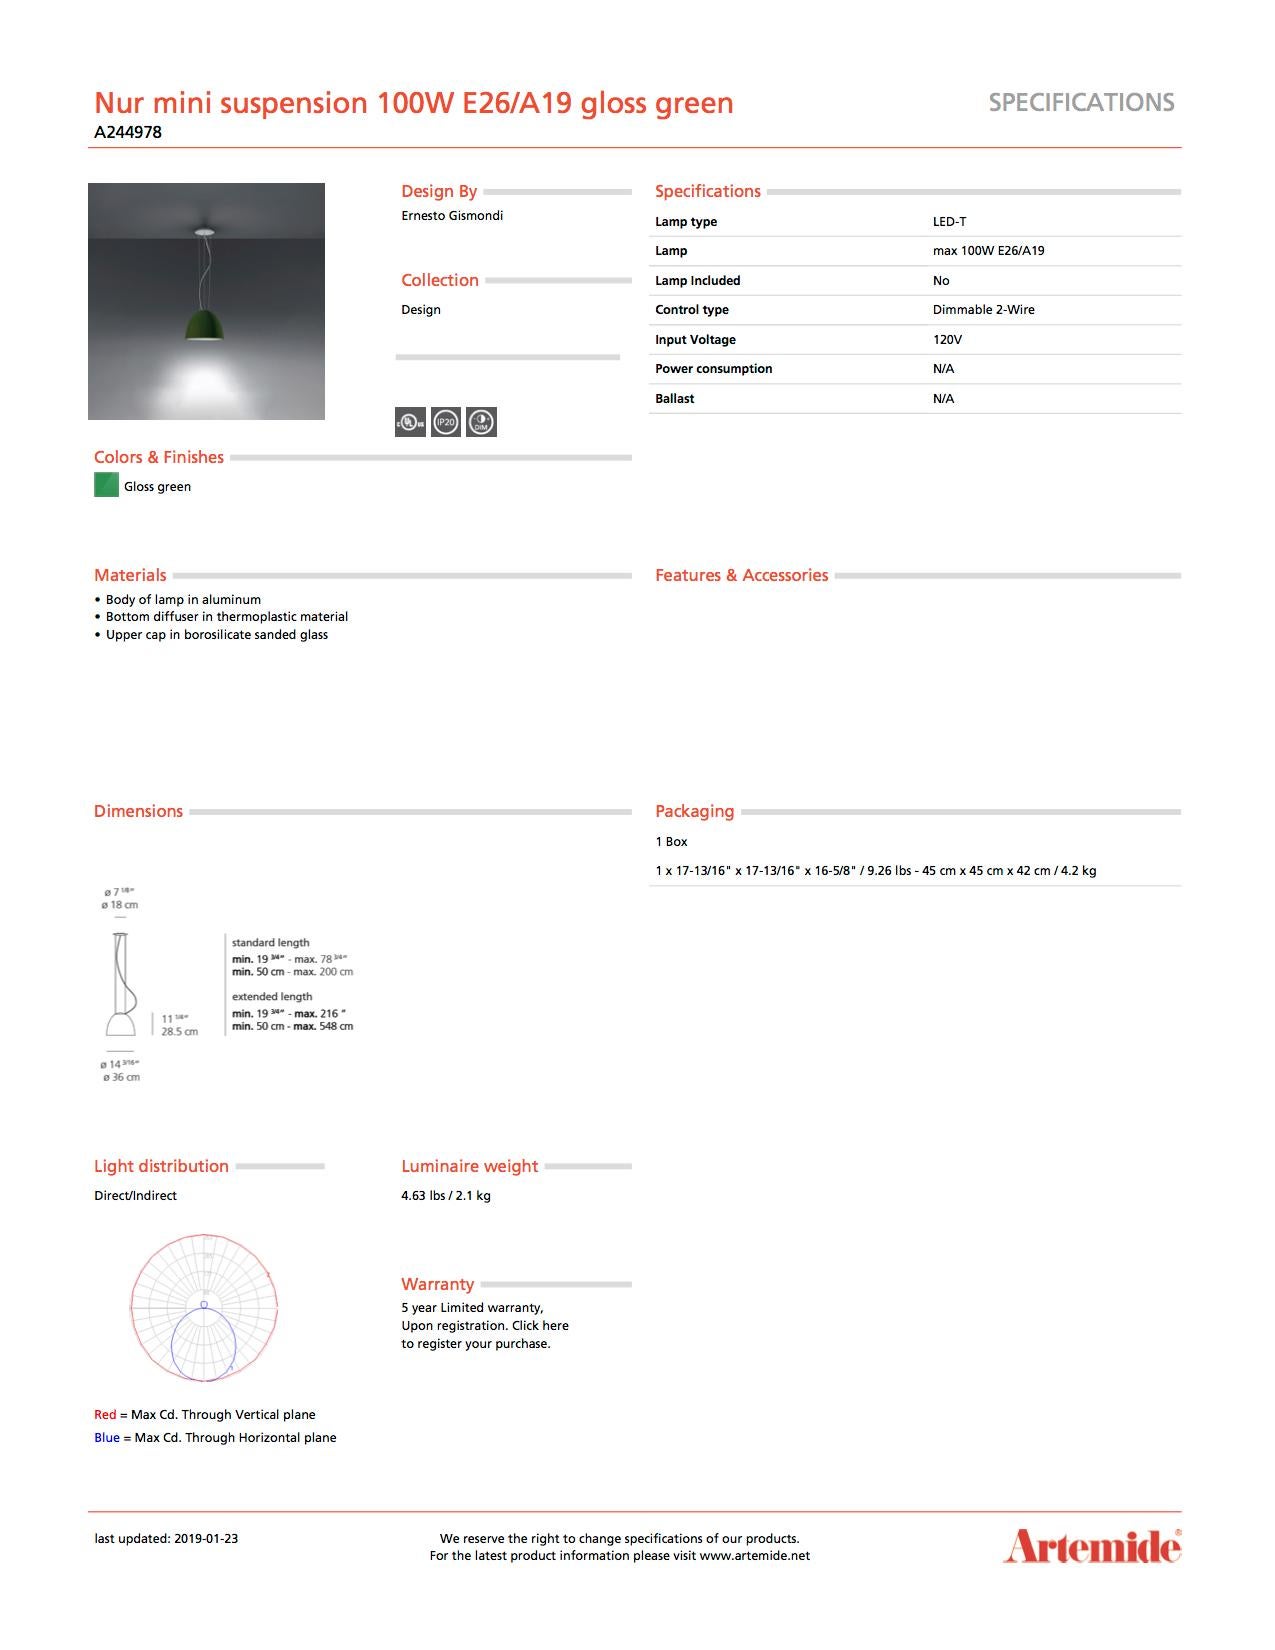 Italian Artemide Nur Mini Suspension Light 100W E26/A19 in Gloss Green For Sale